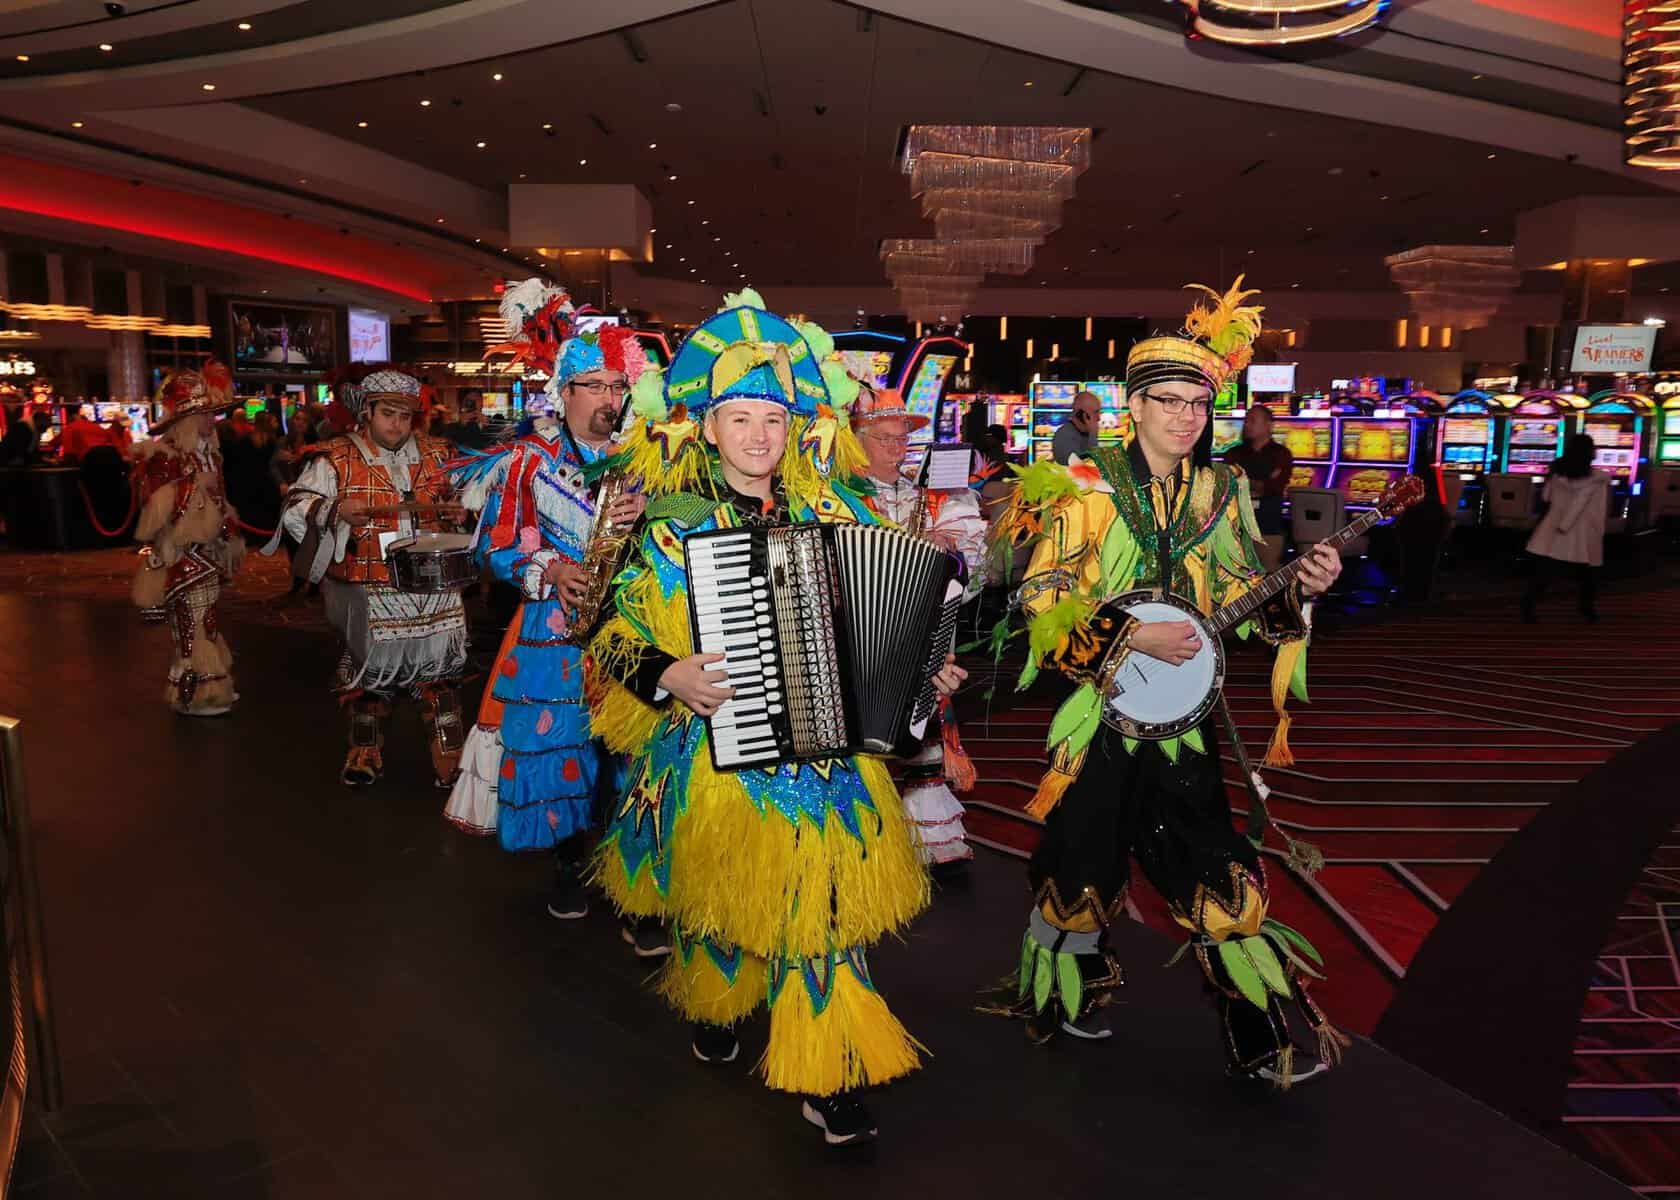 Live! Casino to sponsor Mummers Parade